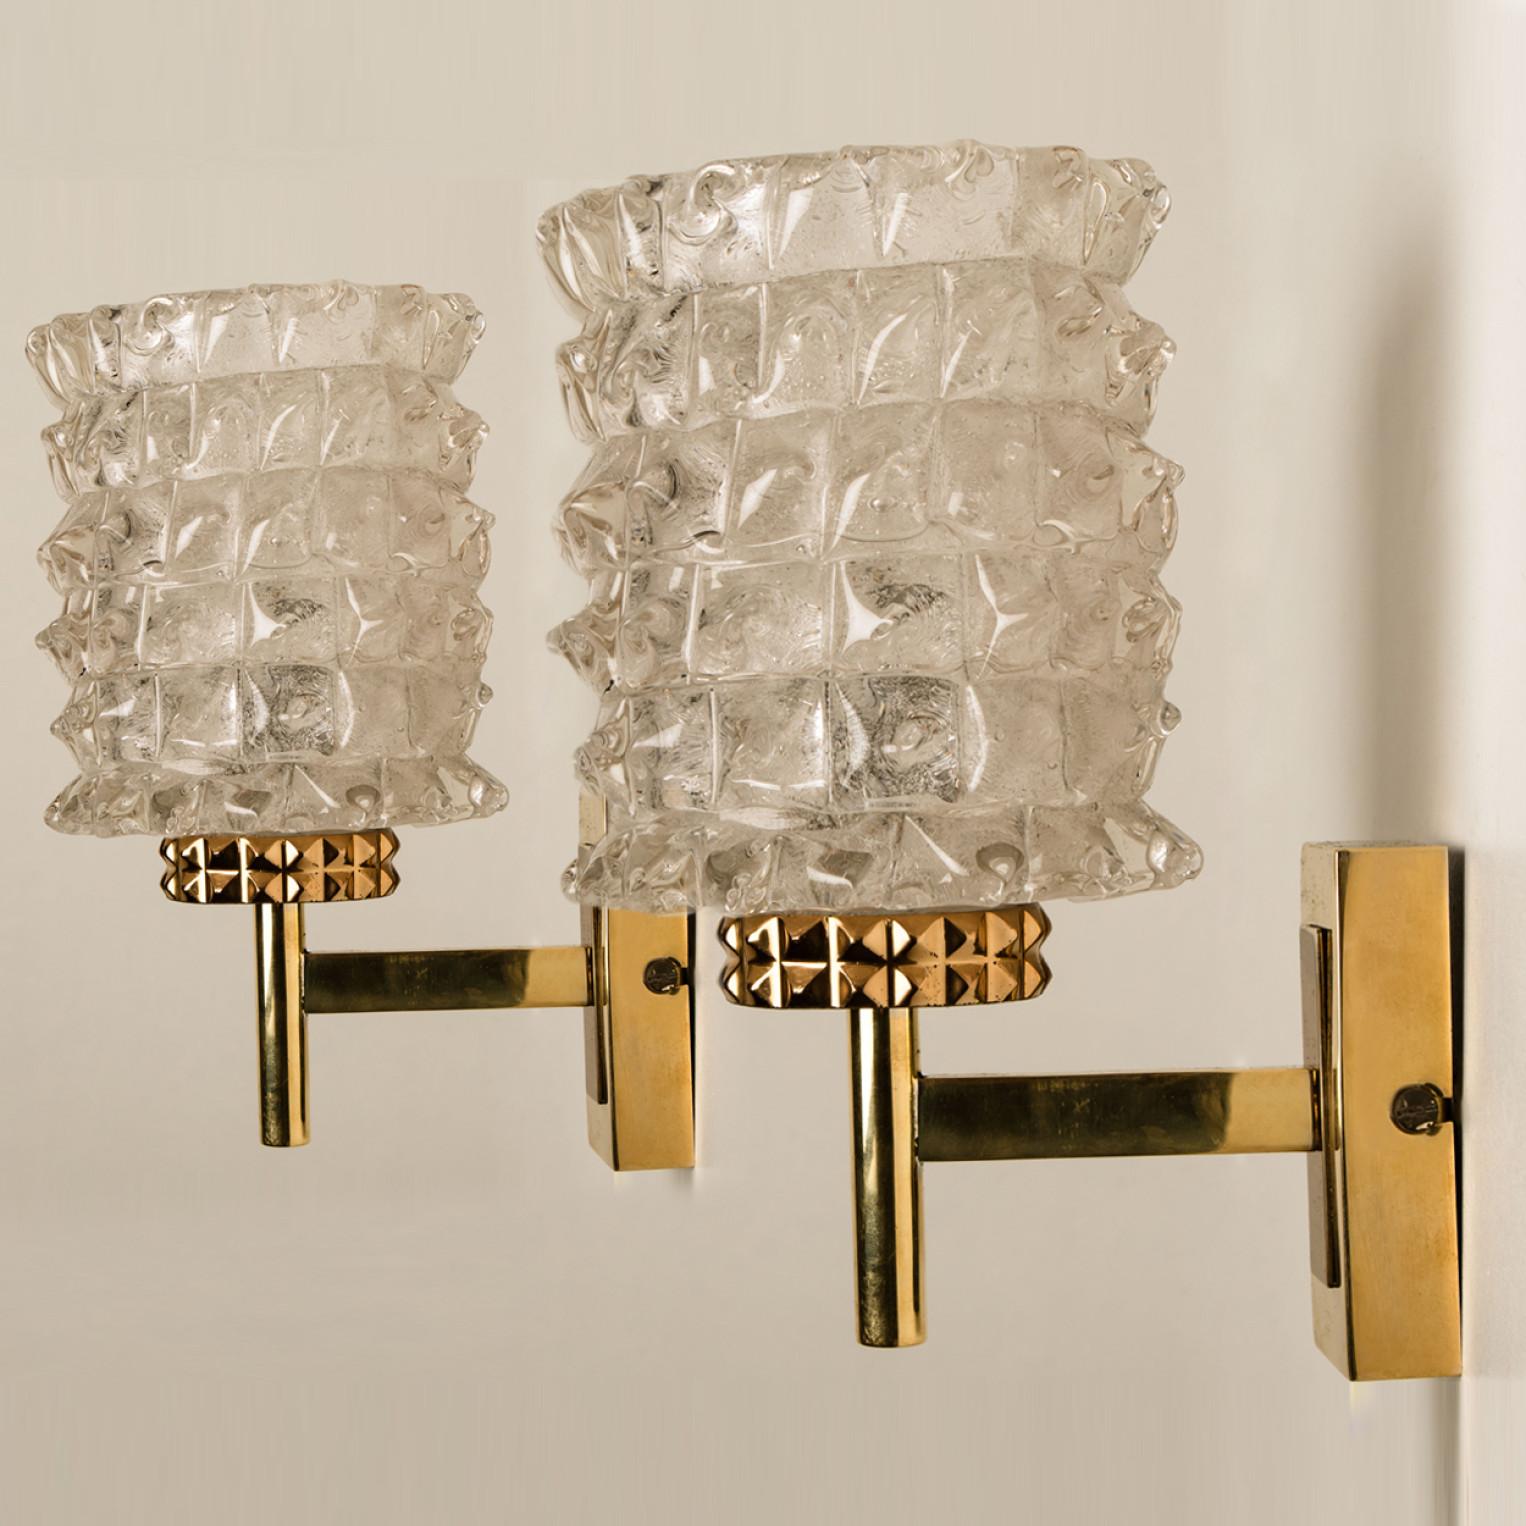 German Hillebrand Brass Glass Wall Light Fixtures, 1970s For Sale